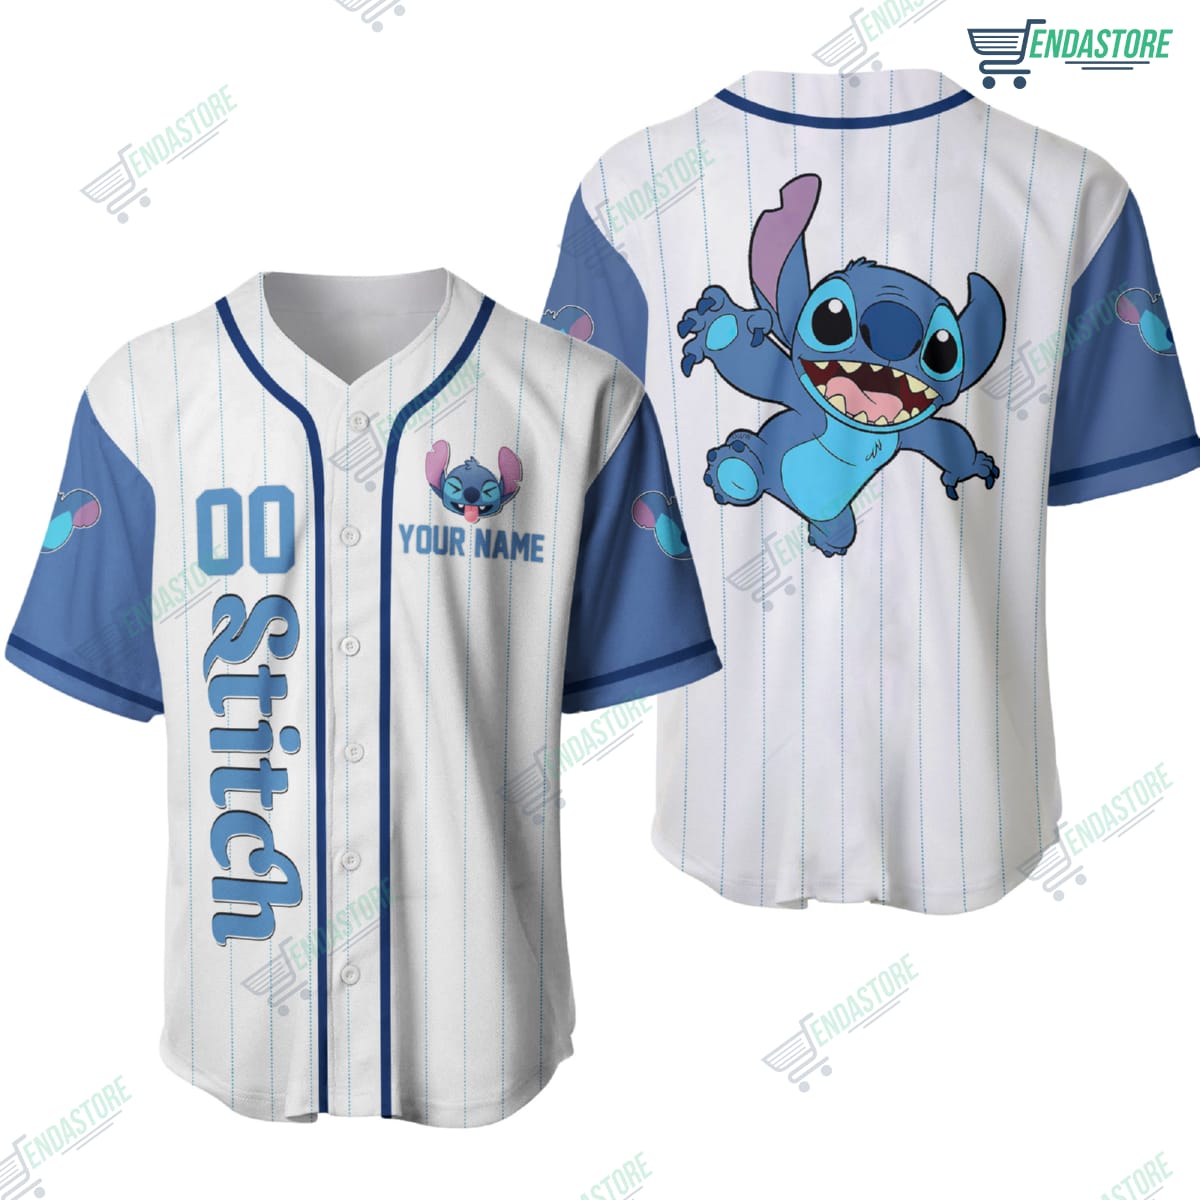 Texas Rangers Stitch custom Personalized Baseball Jersey -   Worldwide Shipping